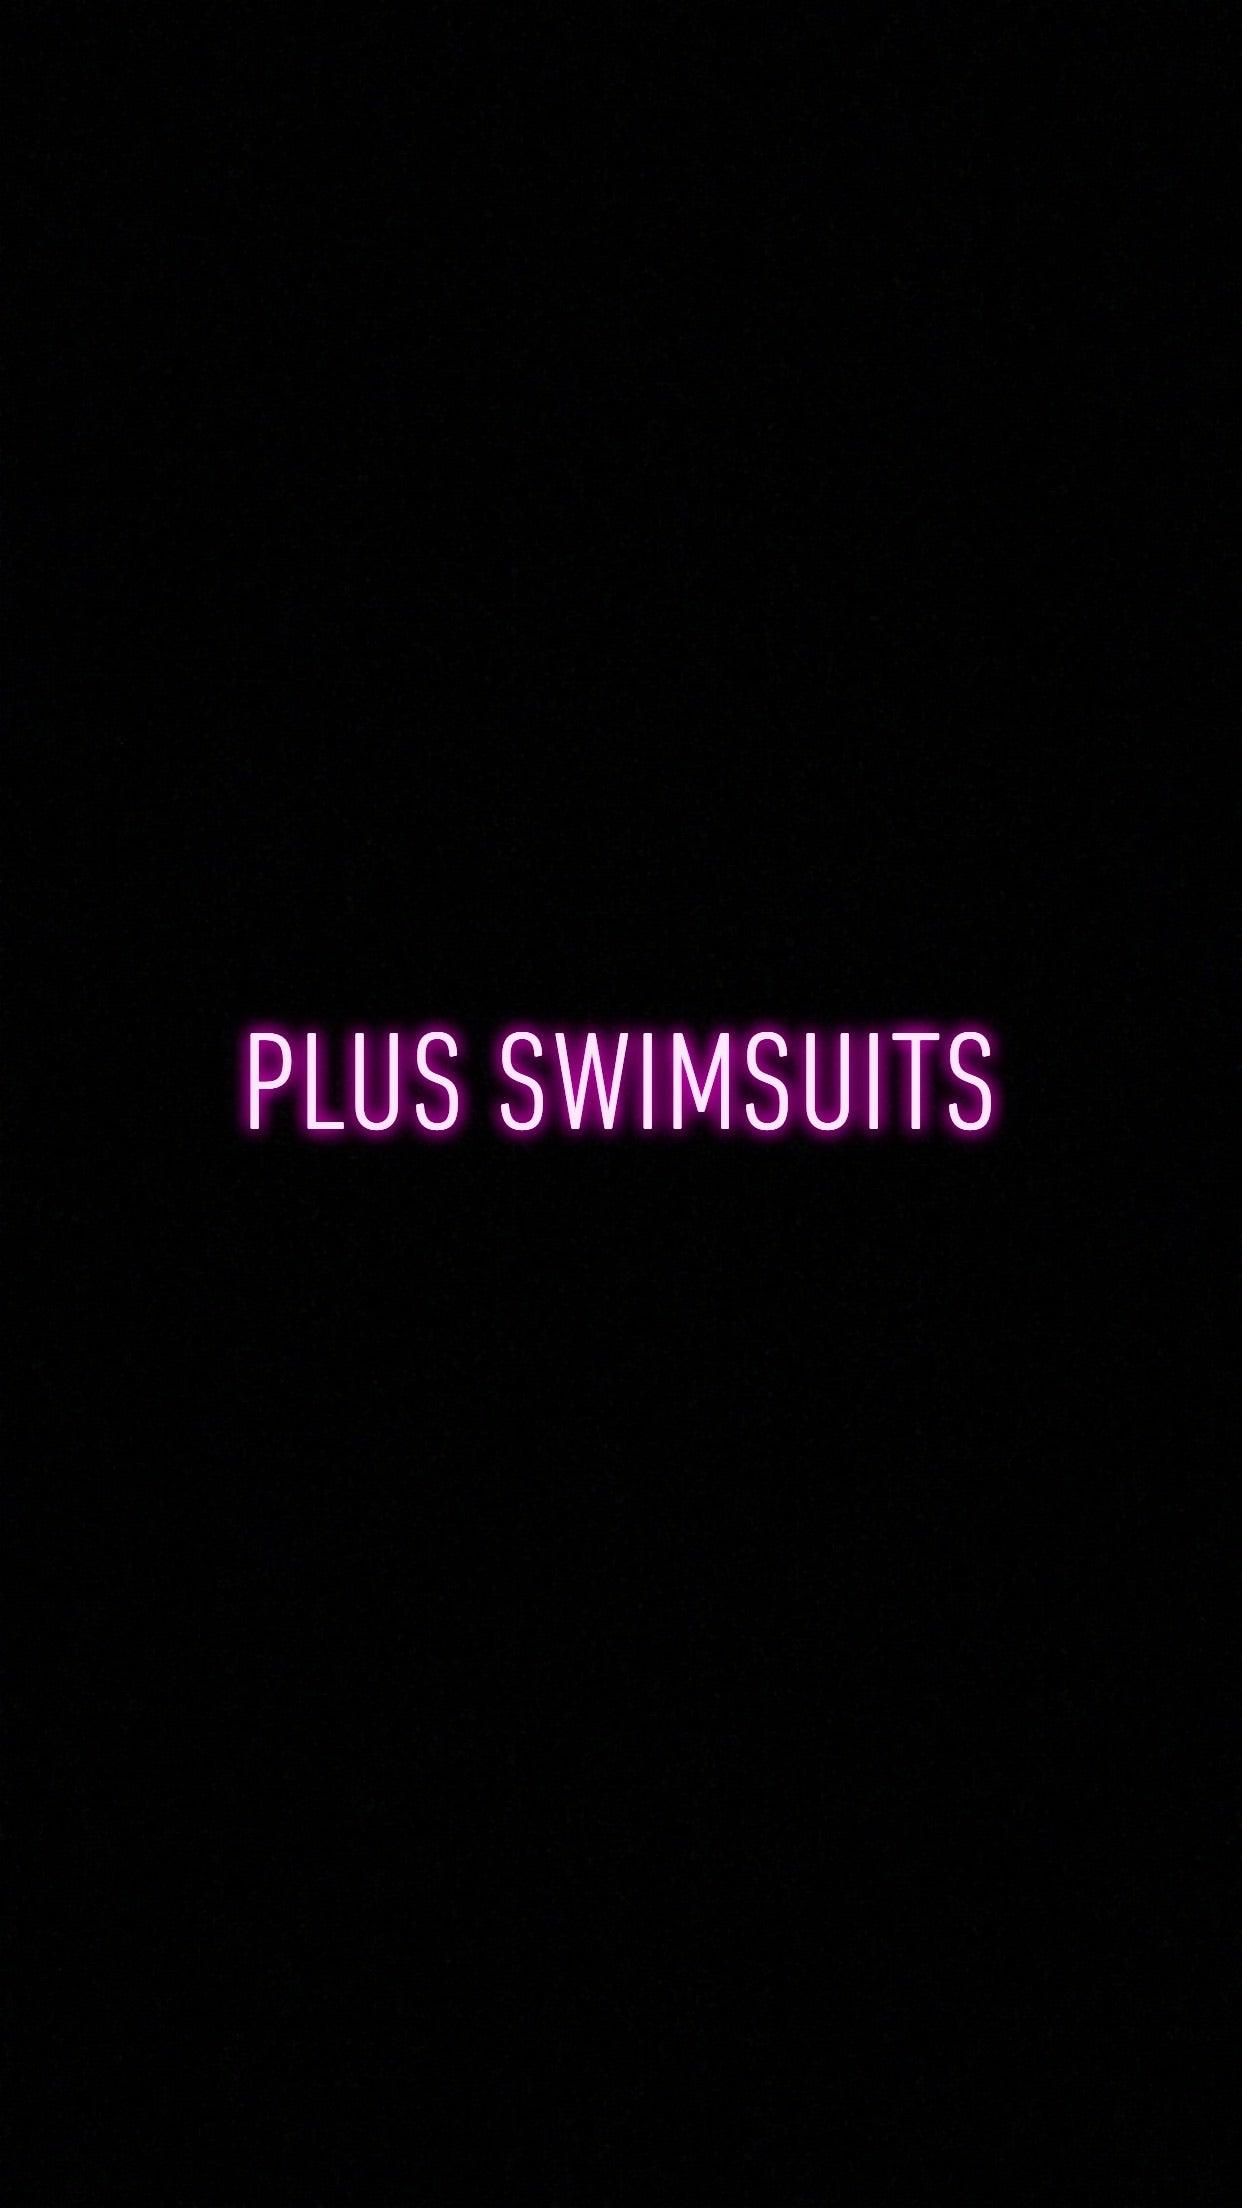 Plus Swimwear - Mint Leafe Boutique 